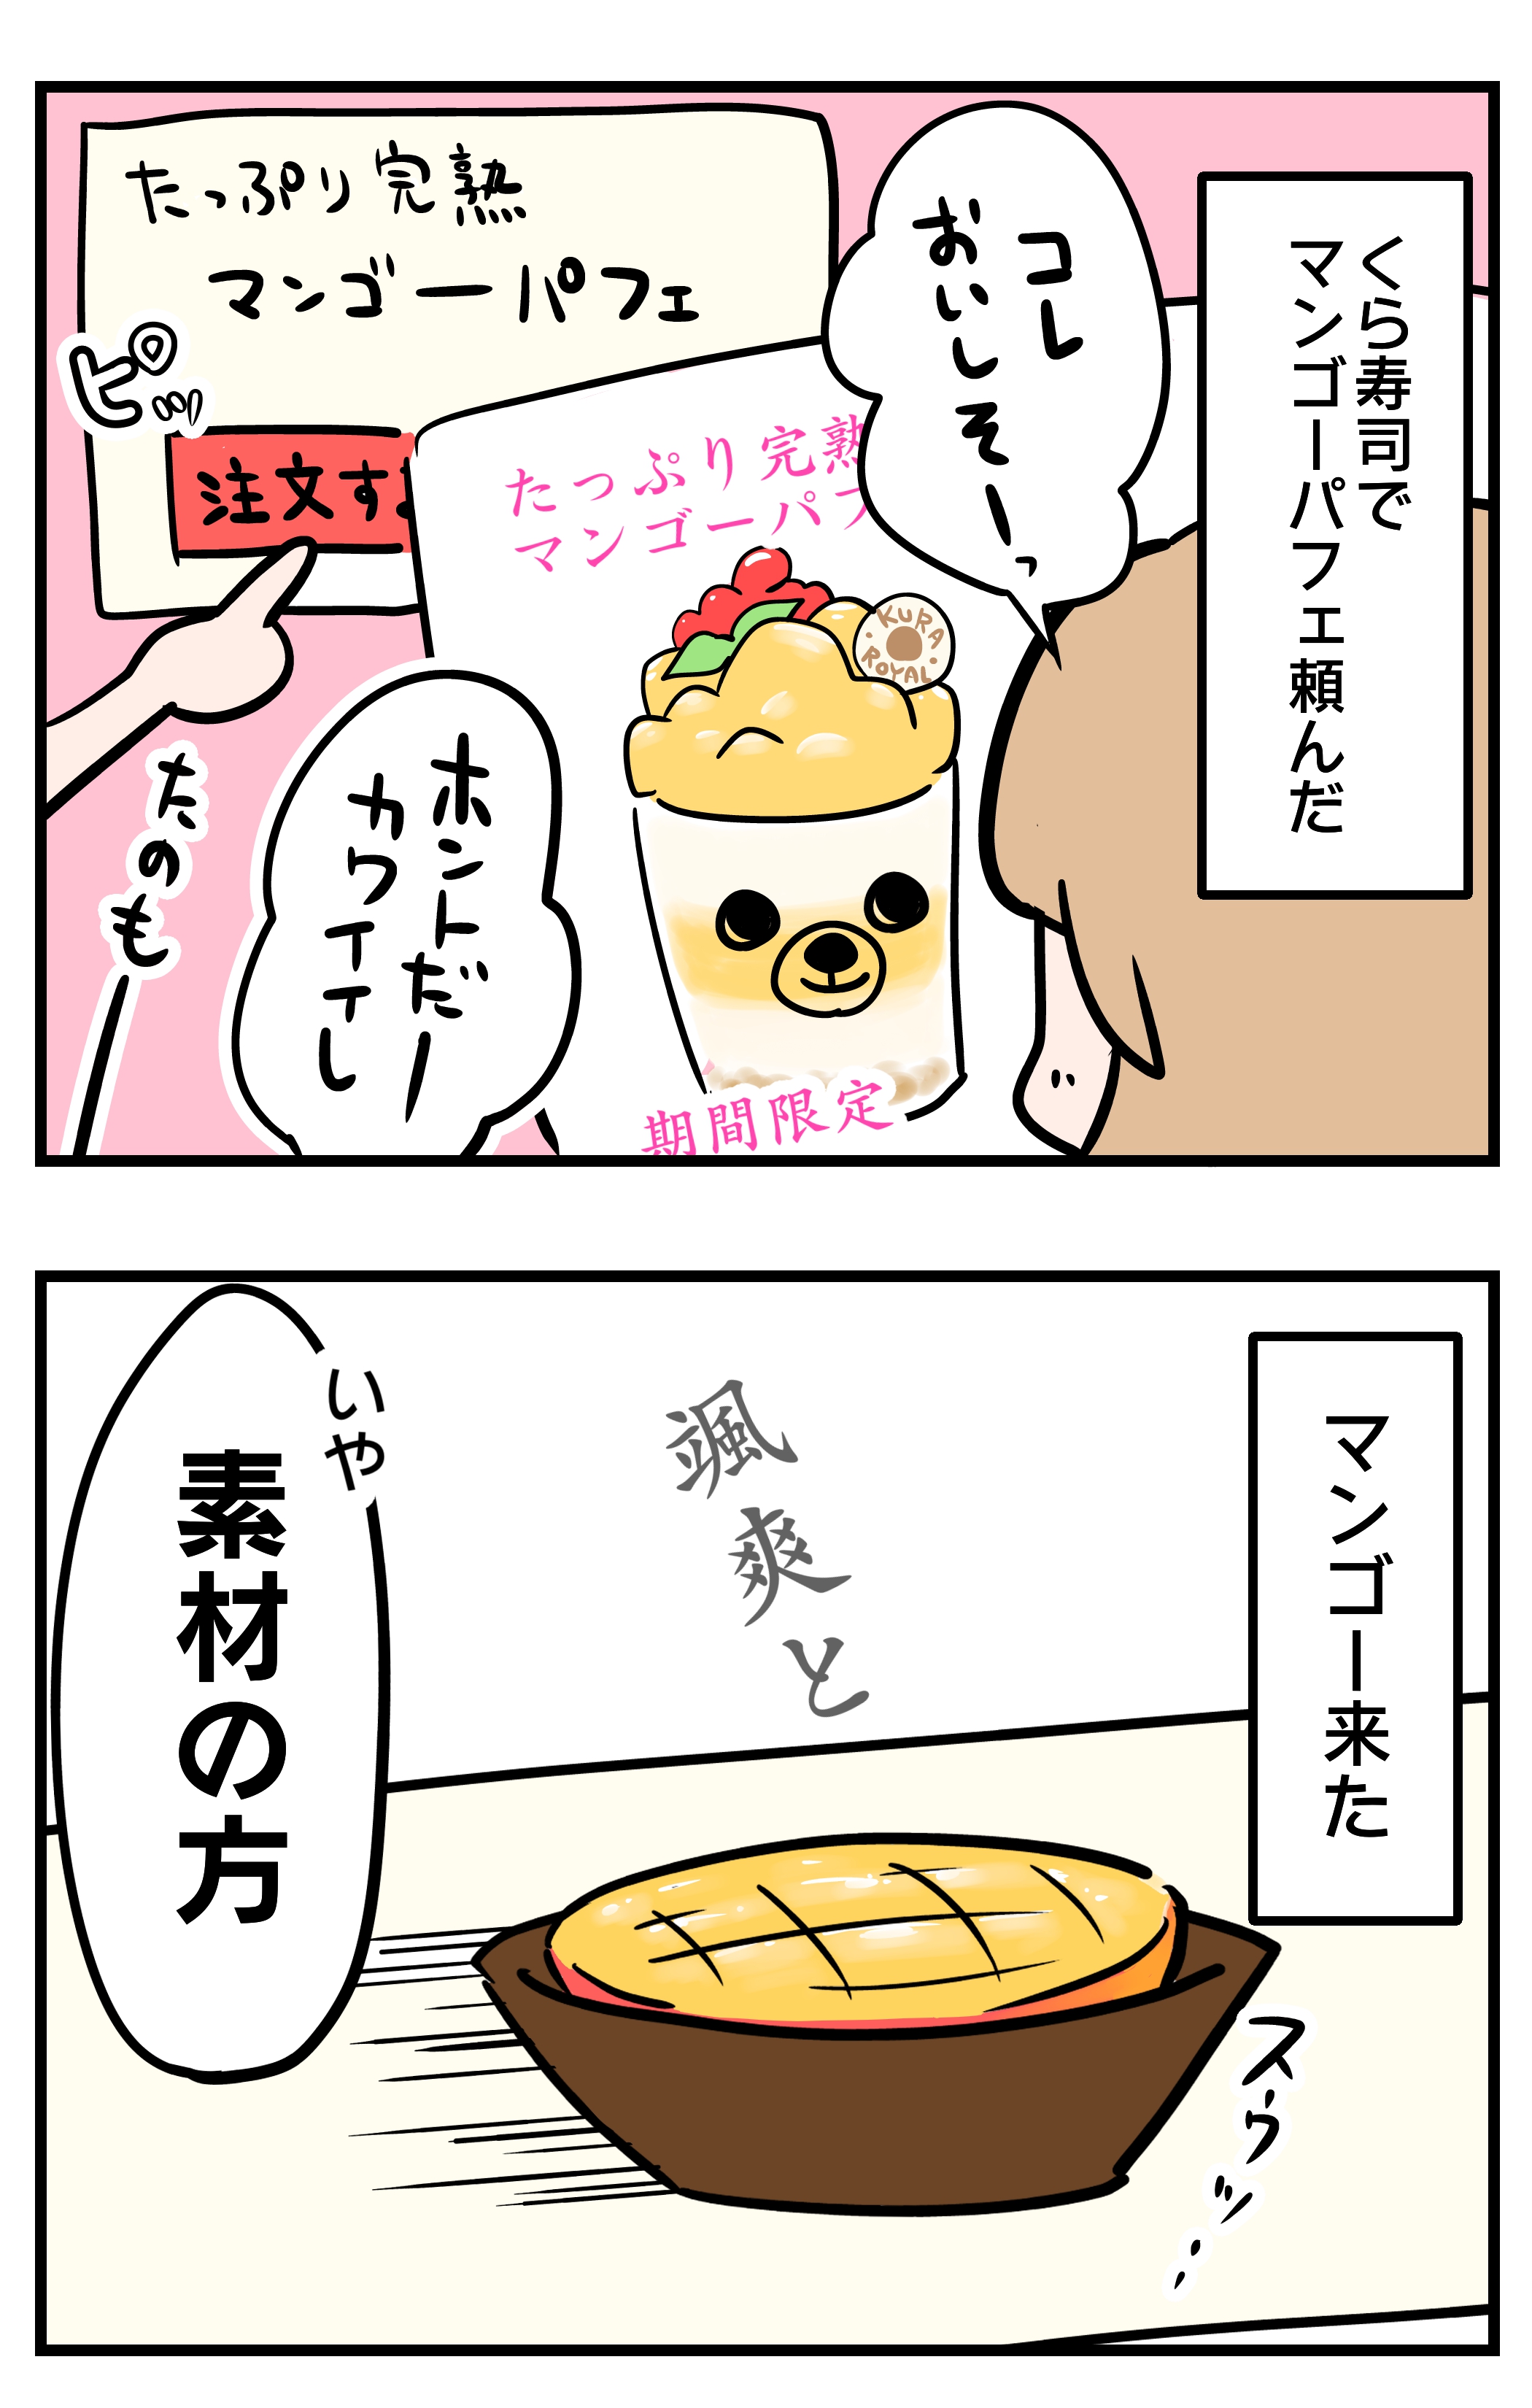 マンゴー事変inくら寿司 2コマ漫画 オヤトカ コトカ